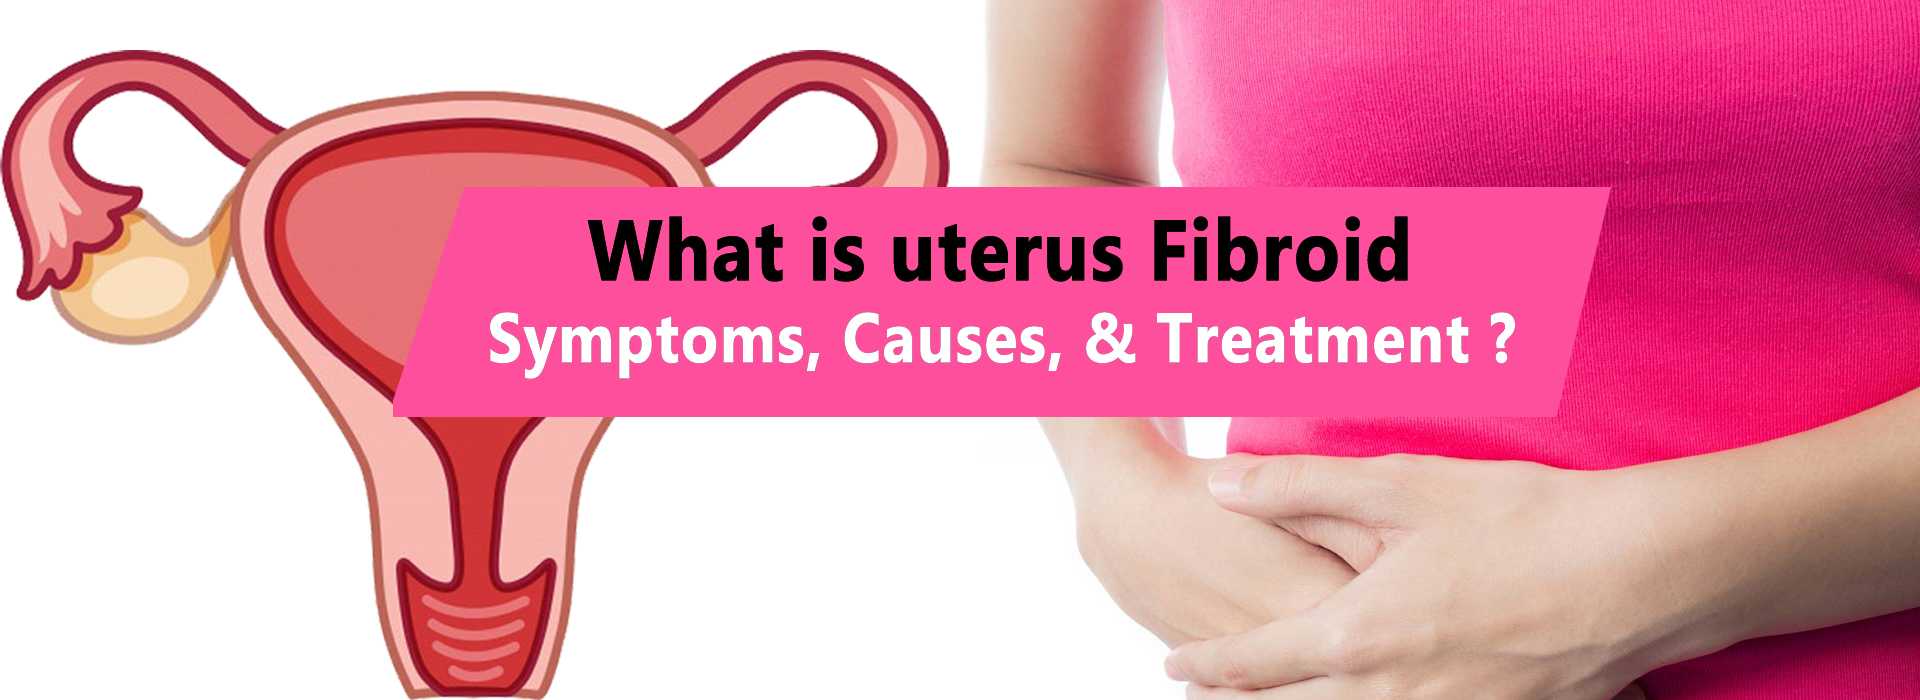 Uterus fibroid